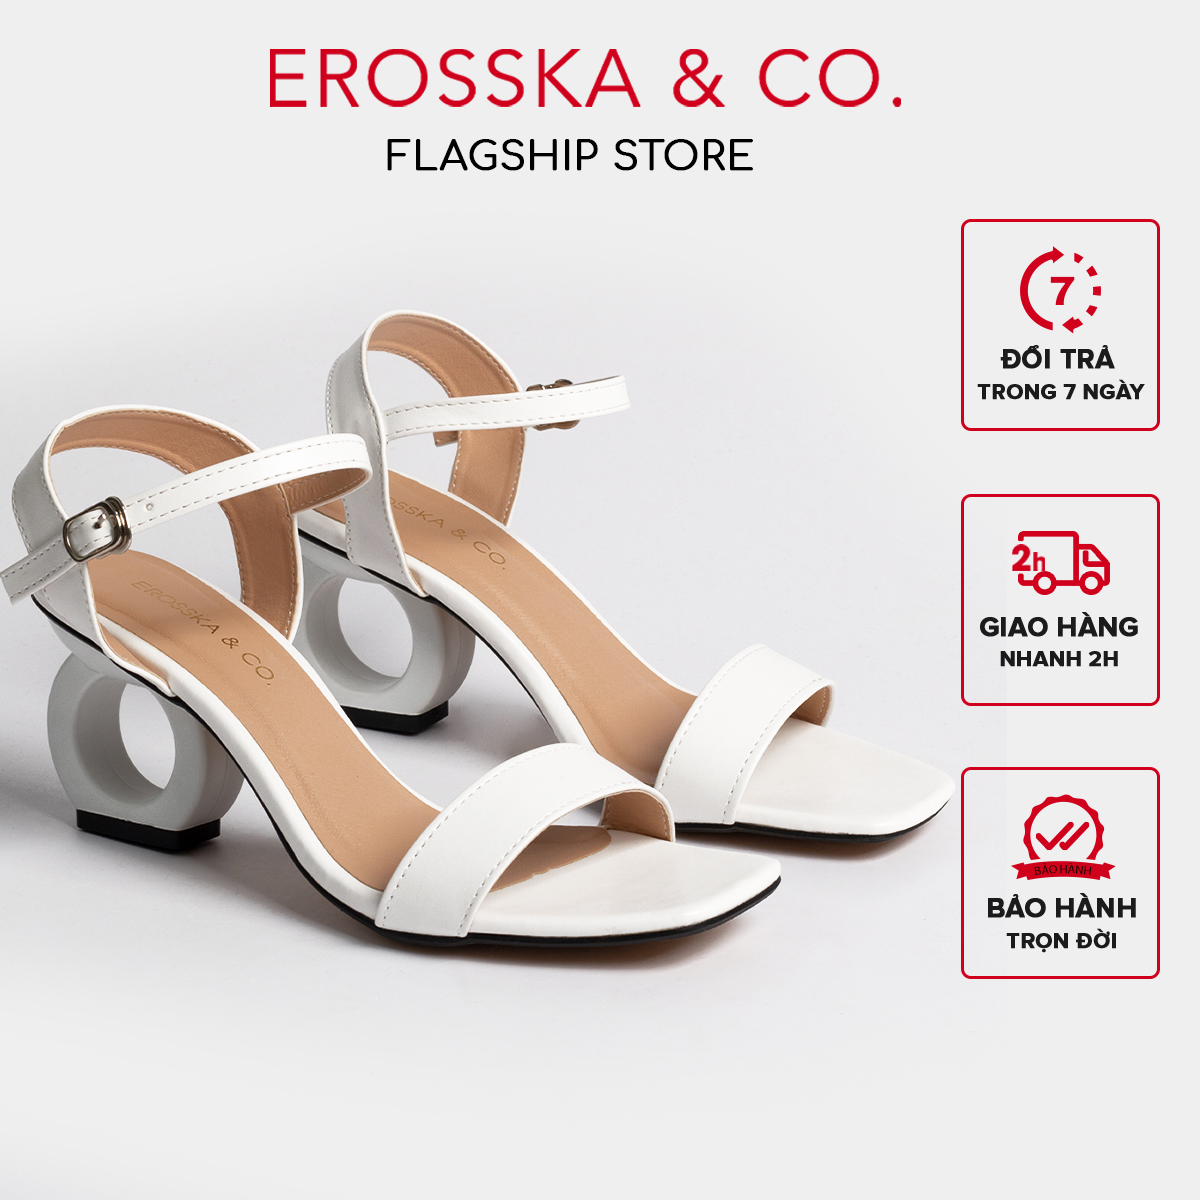 Giày cao gót vuông thời trang Erosska hở gót quai hậu tinh tế cao 5cm màu đen - EB009